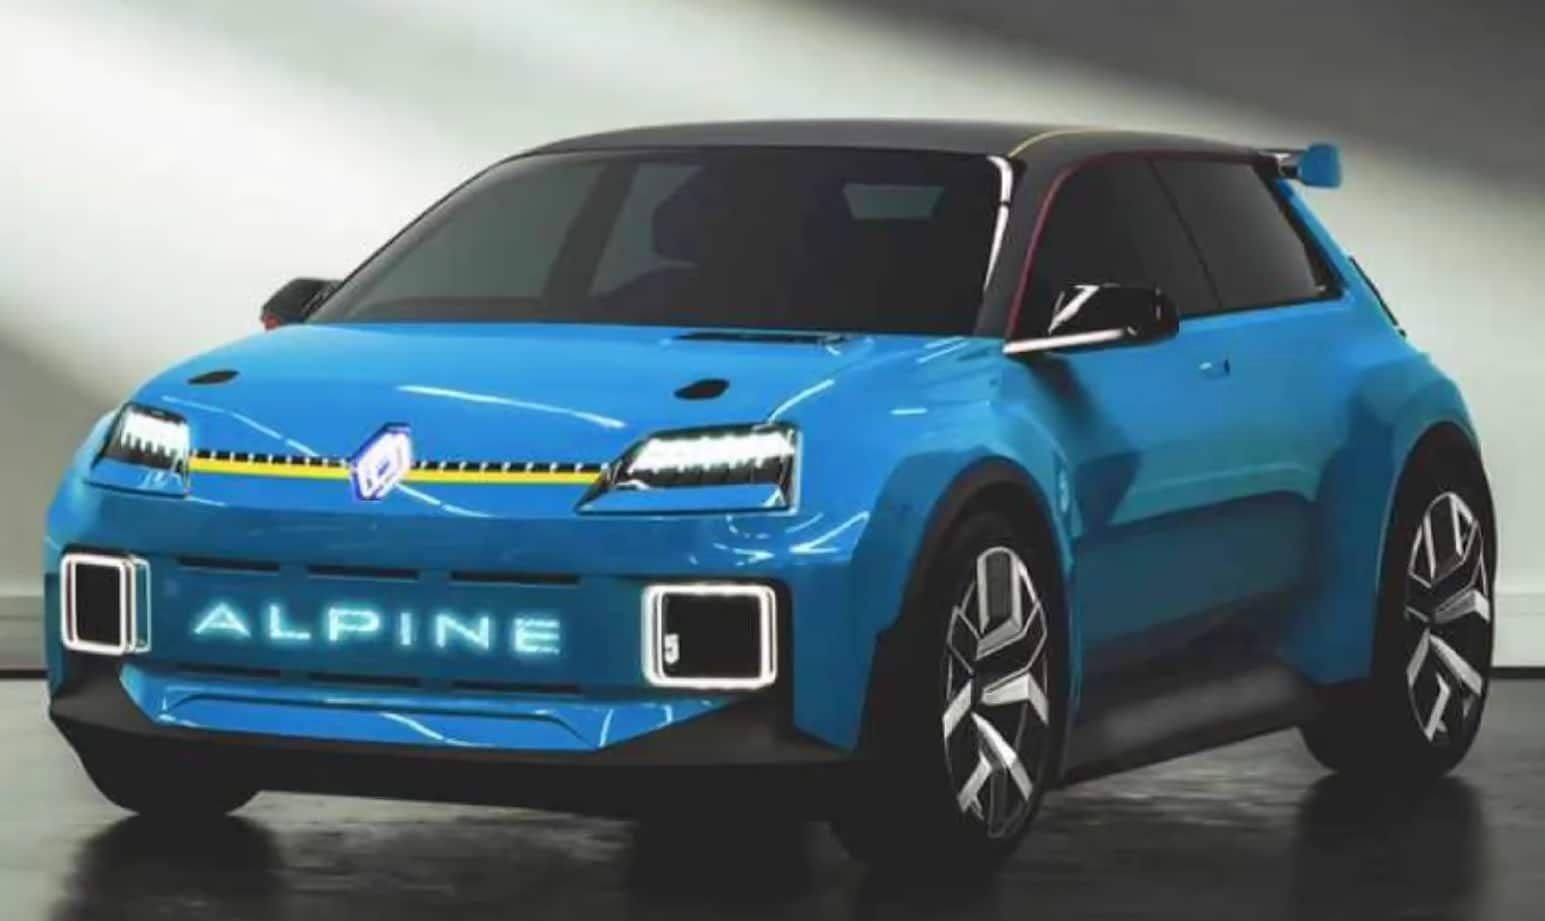 Alpine hot hatchback, Renault 5 Alpine